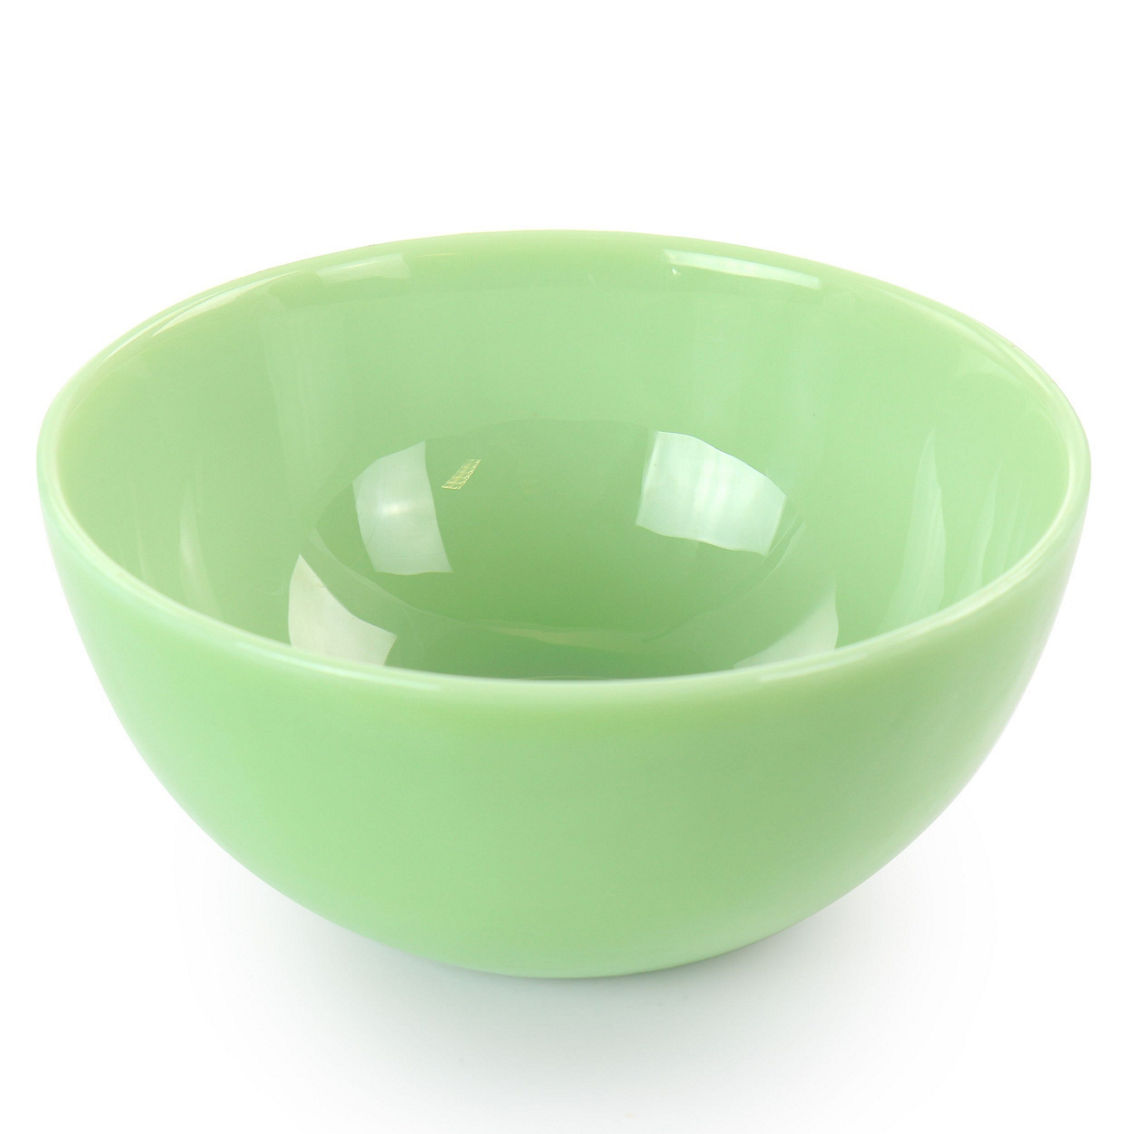 Martha Stewart 2 Piece 6 Inch Jadeite Glass Bowl Set in Jade Green - Image 2 of 5